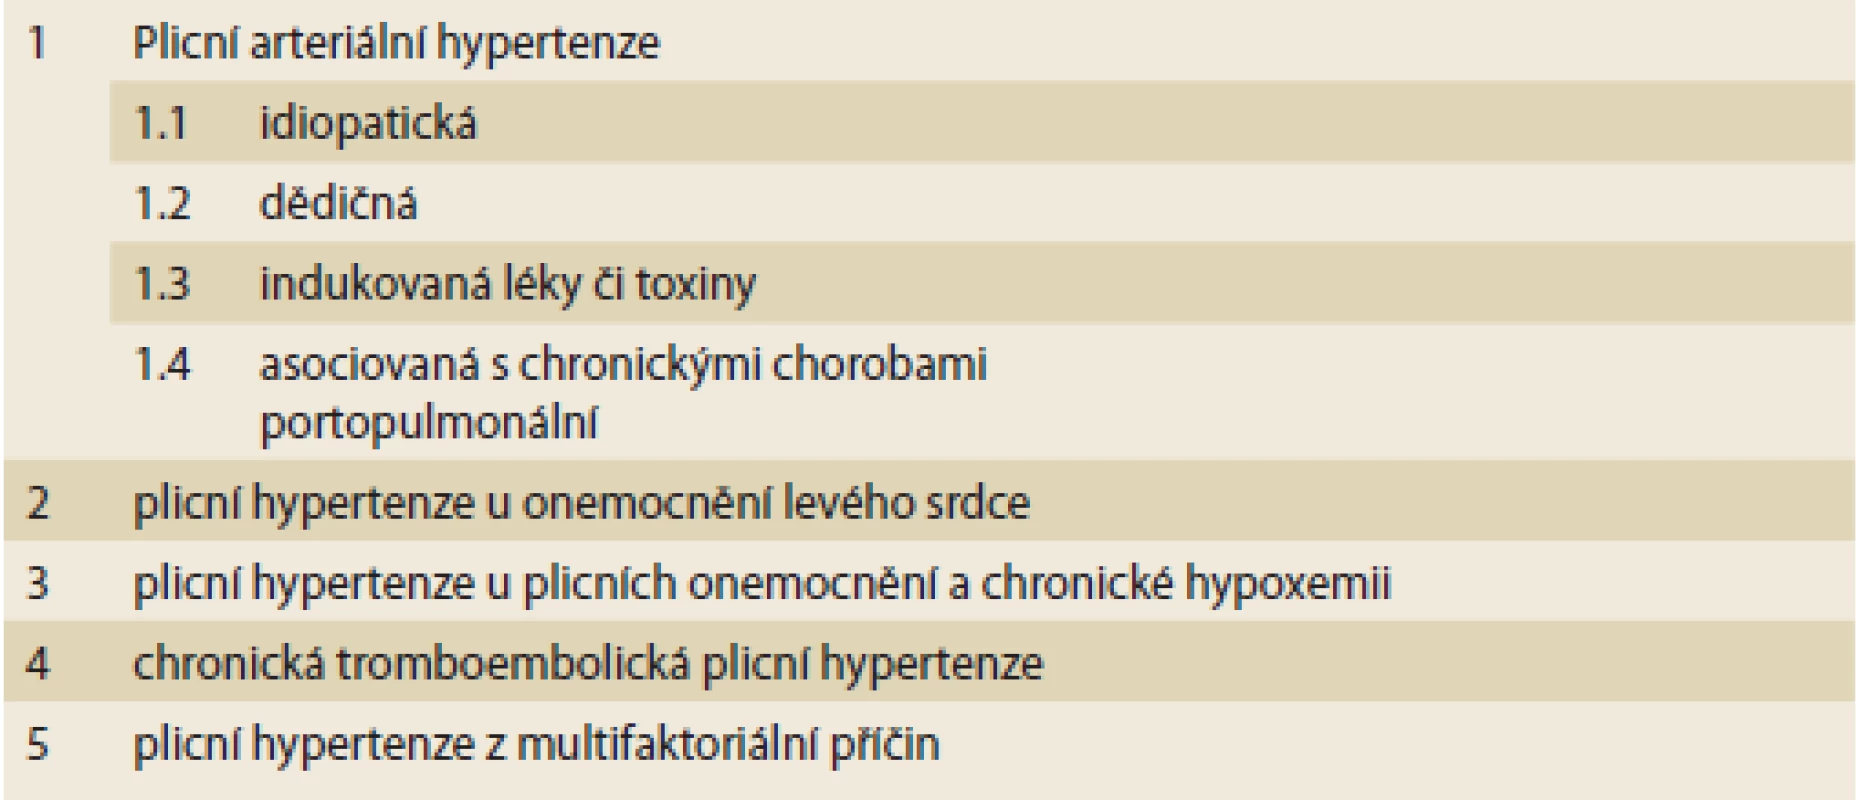 Zjednodušená klasifikace plicní hypertenze.<br>
Simplified classification of pulmonary hypertension.